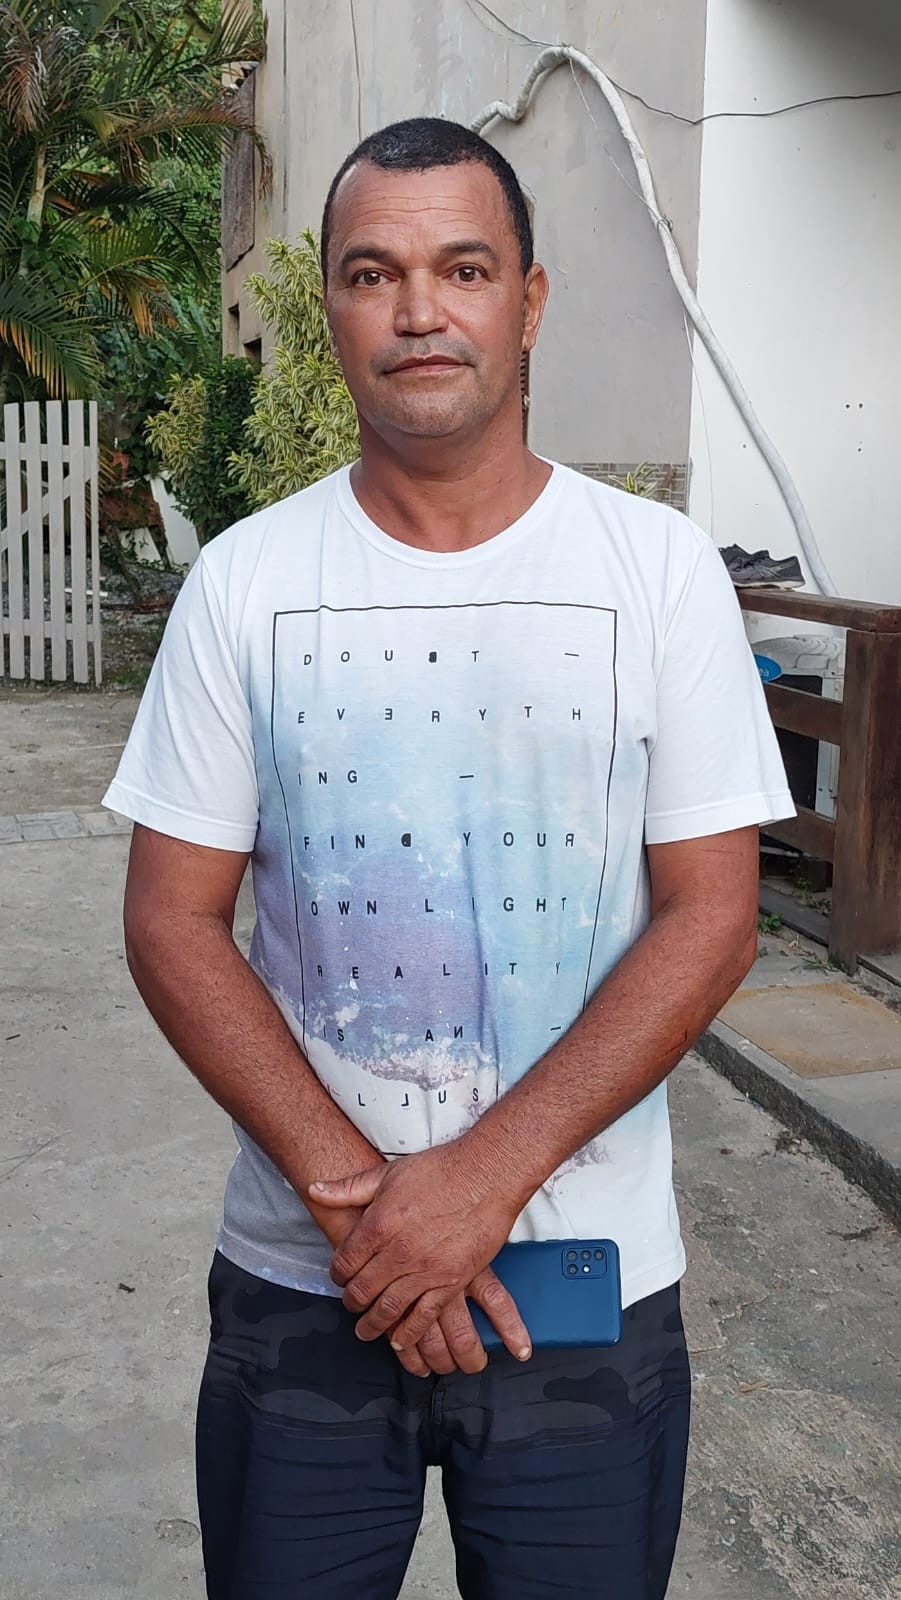 Jardineiro isolado por 5 dias em ilha no Rio conta que comeu limão e carvão para sobreviver 